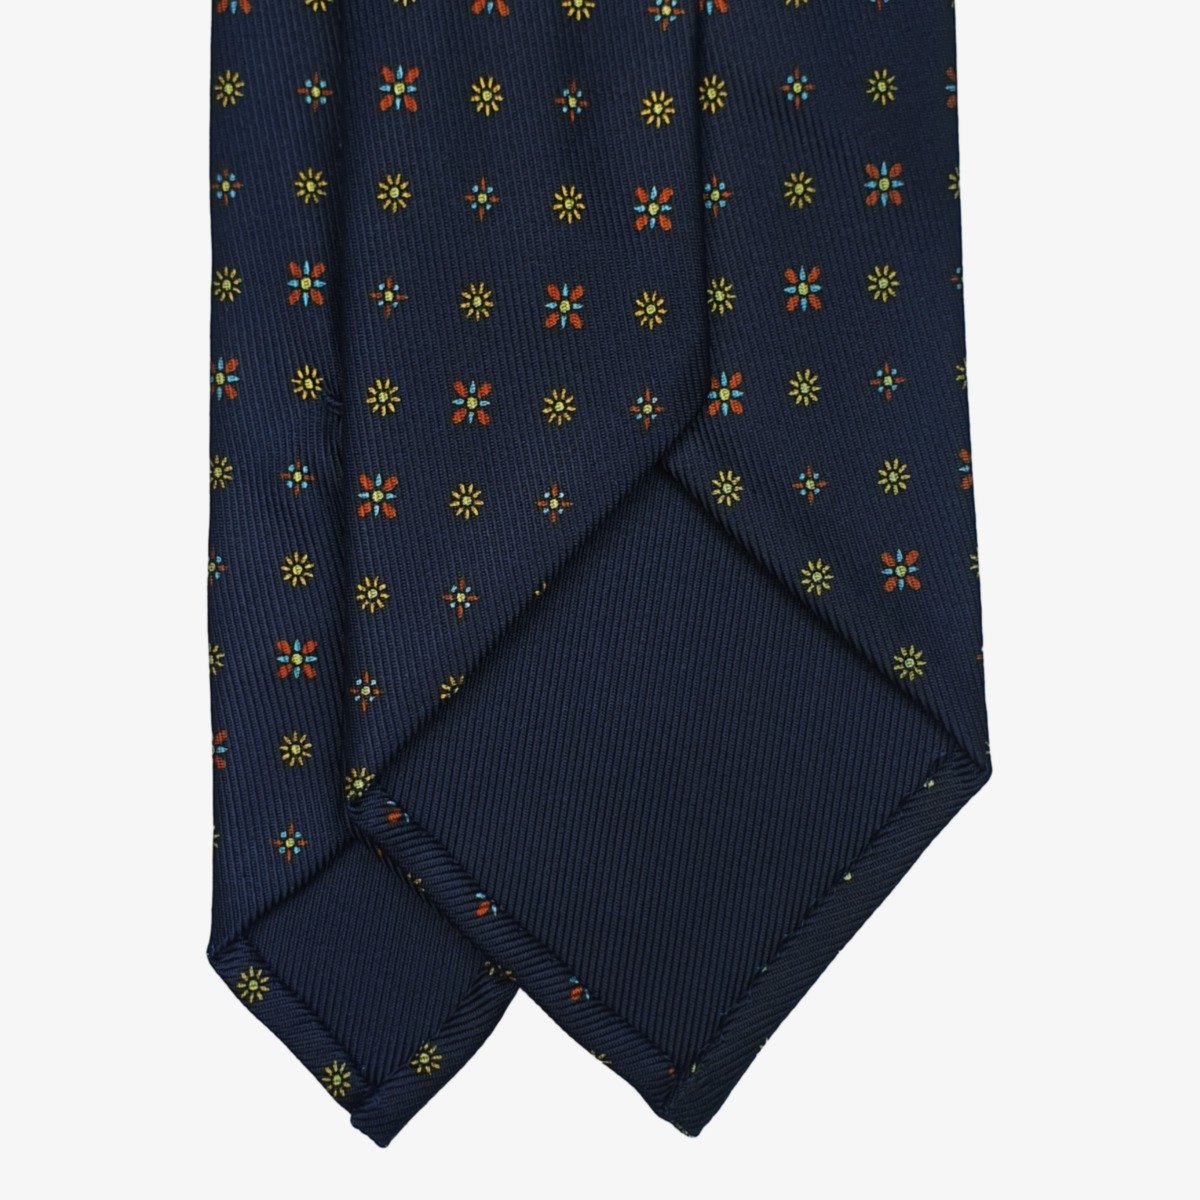 Shibumi Firenze 50oz navy blue silk tie with yellow flowers